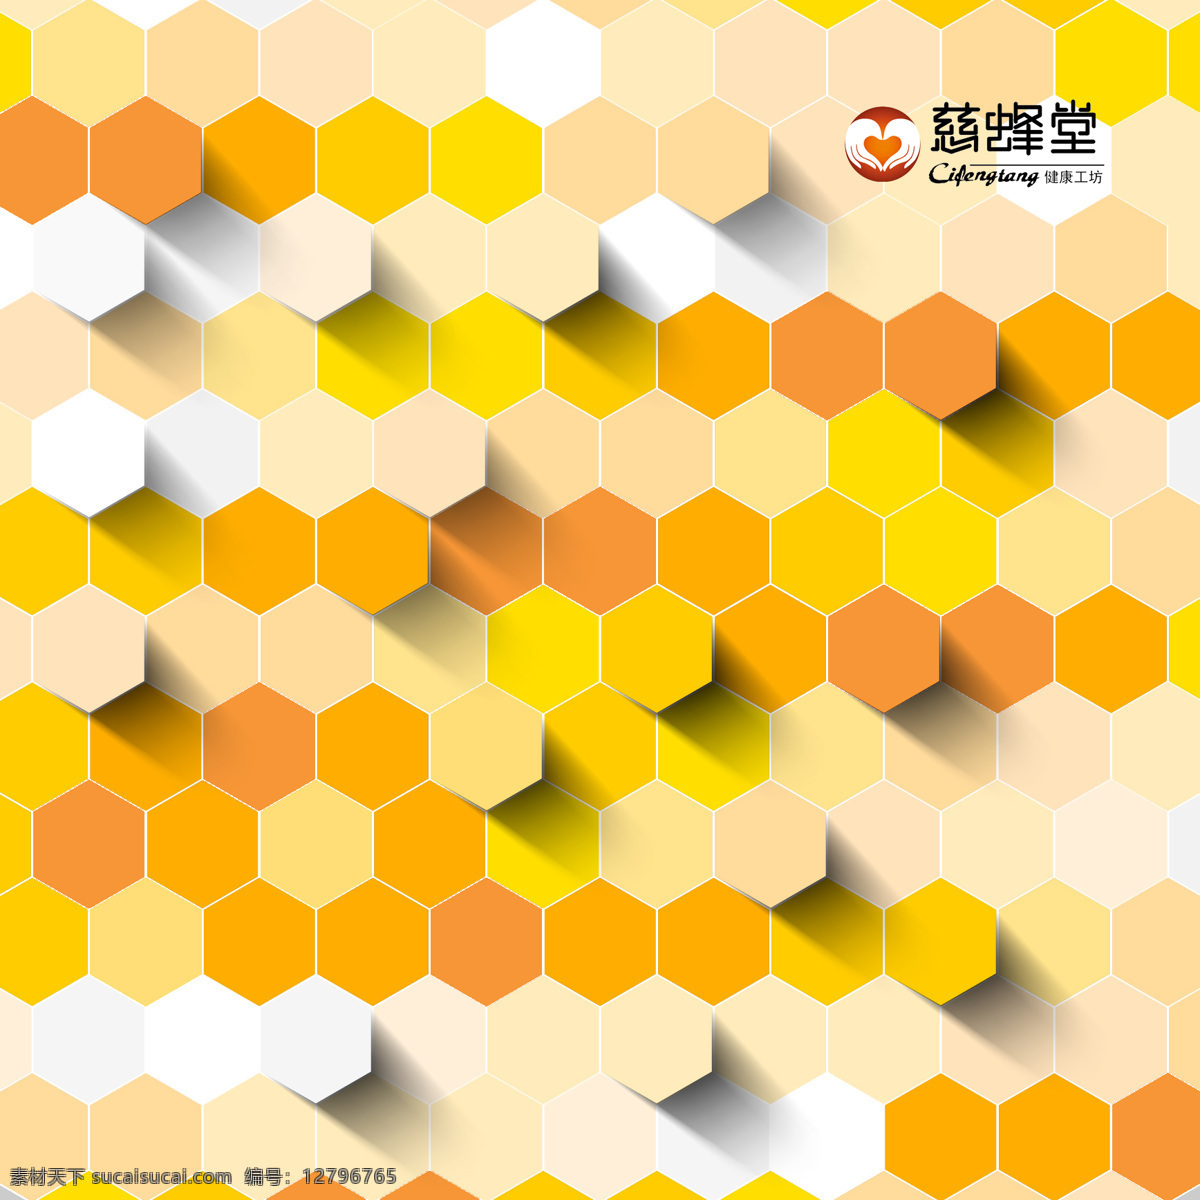 慈 蜂 堂 标准 展位 效果图 蜂蜜 橘黄色 六边形 洽谈 标展 眉板 耳板 侧板 3x3m 原创设计 原创3d模型